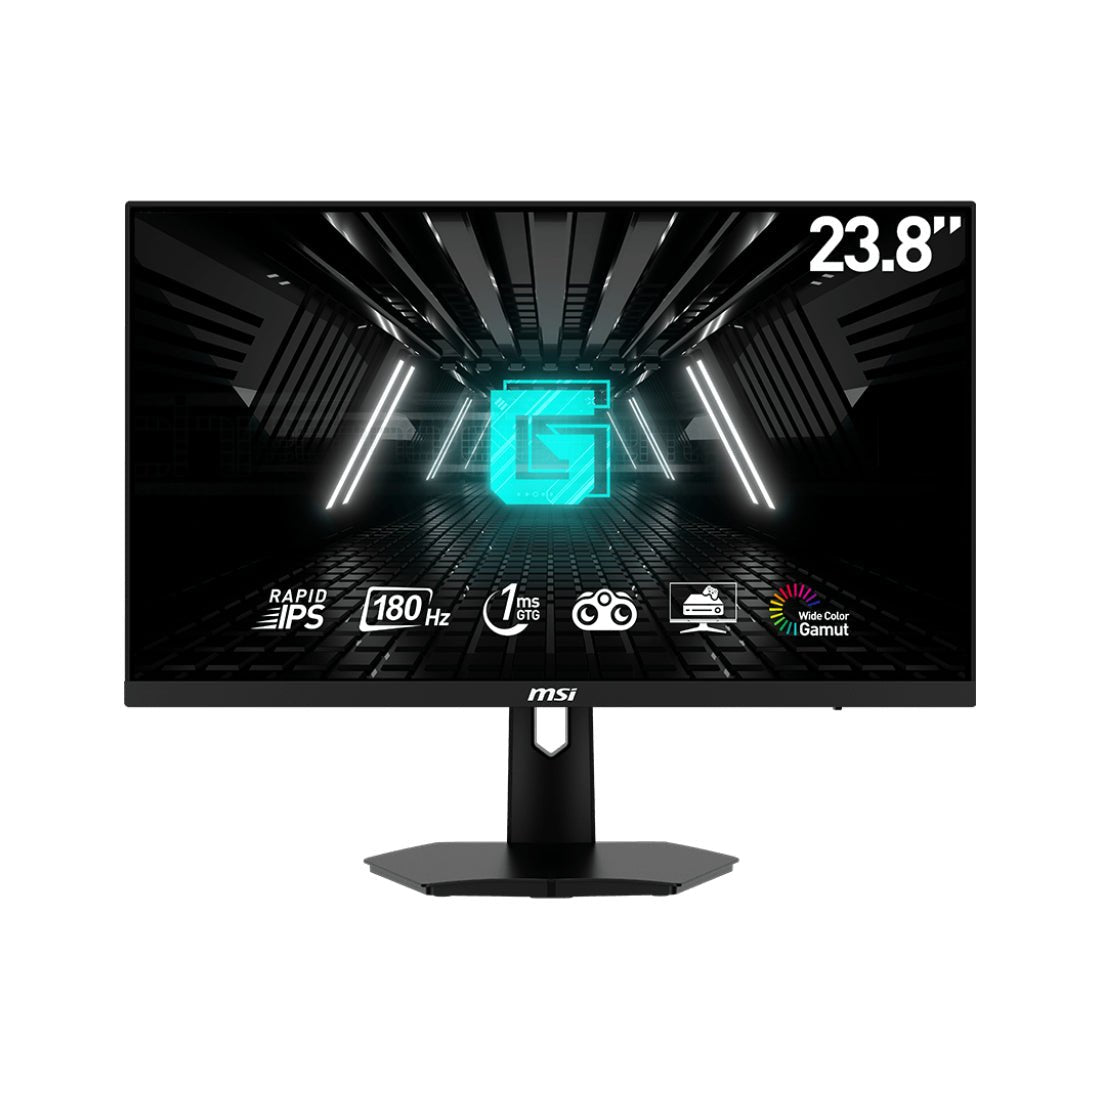 MSI G244F E2 23.8'' 180Hz IPS Flat Gaming Monitor - شاشة - Store 974 | ستور ٩٧٤